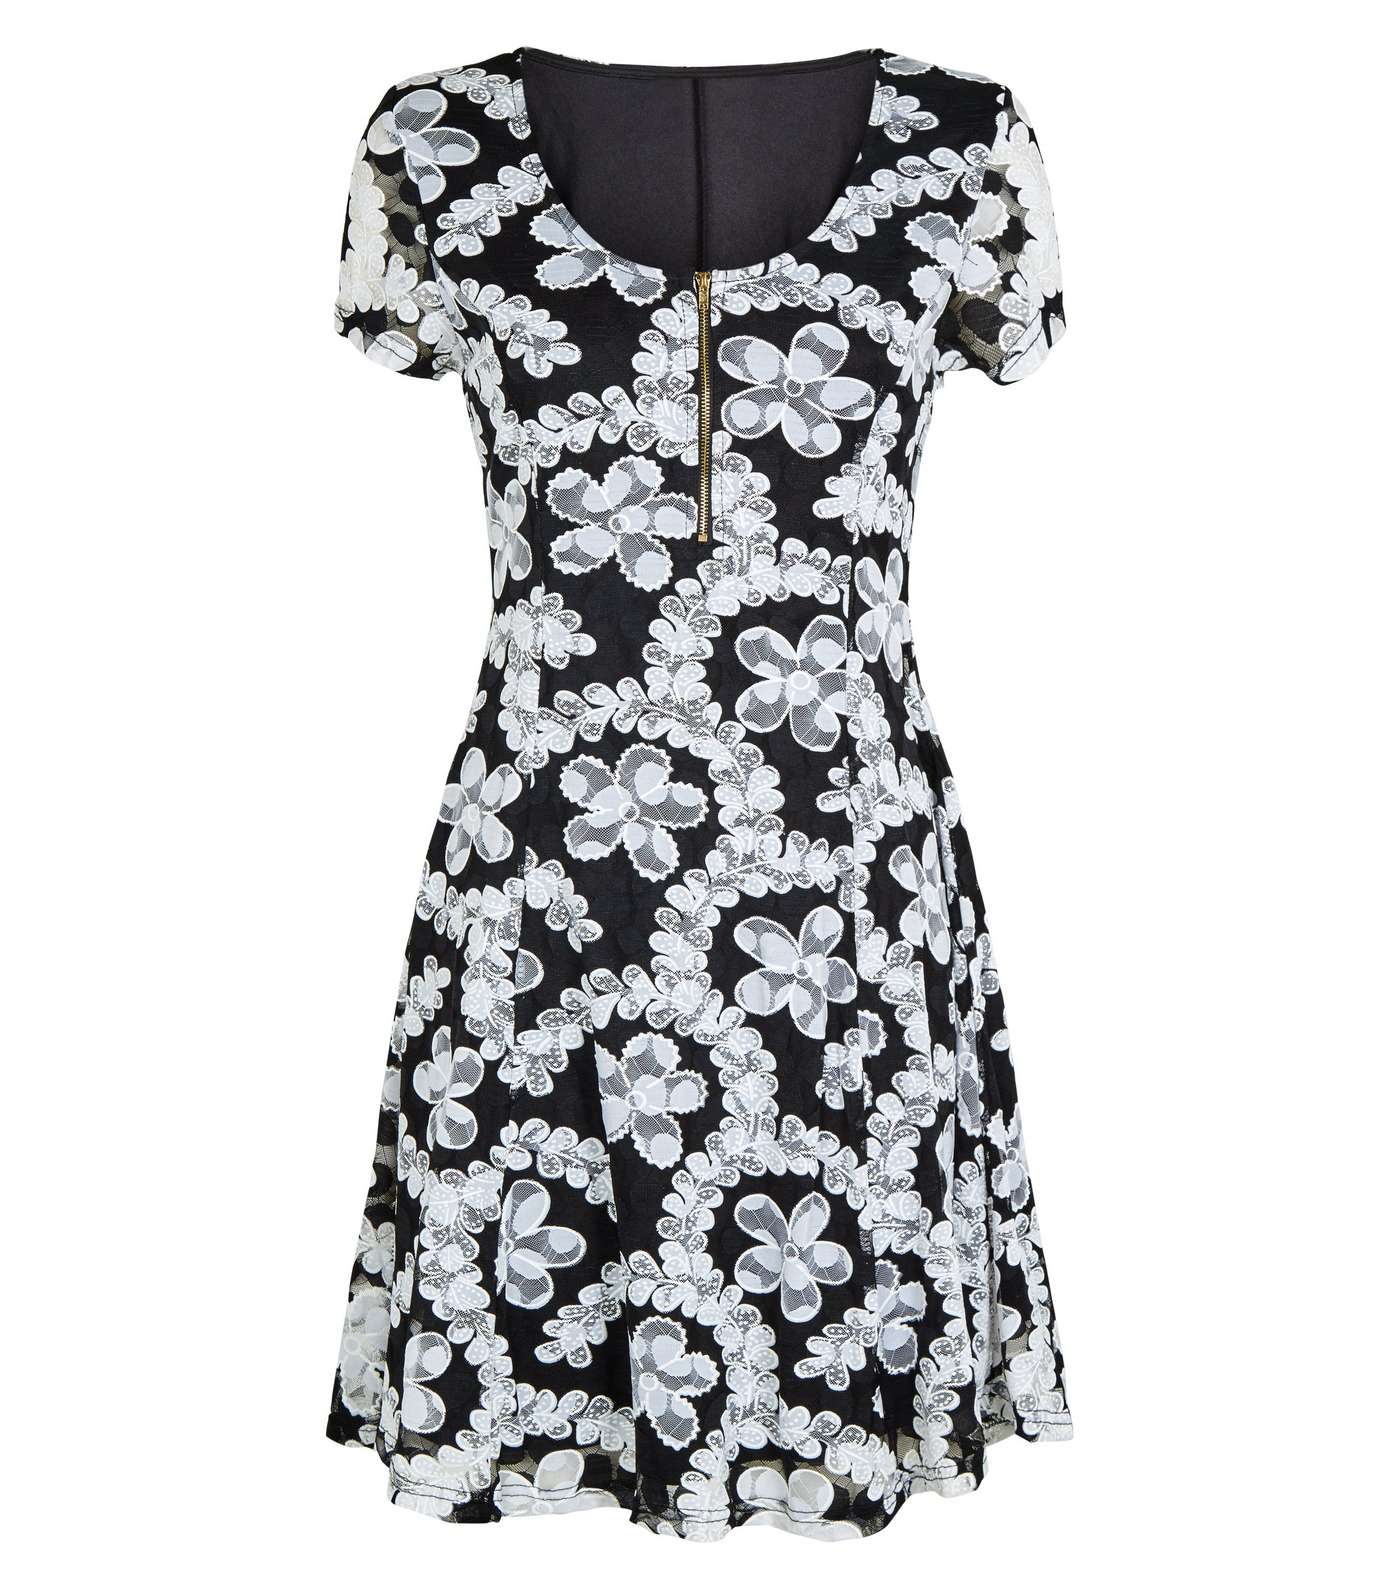 Apricot Black Lace Zip Front Dress Image 4